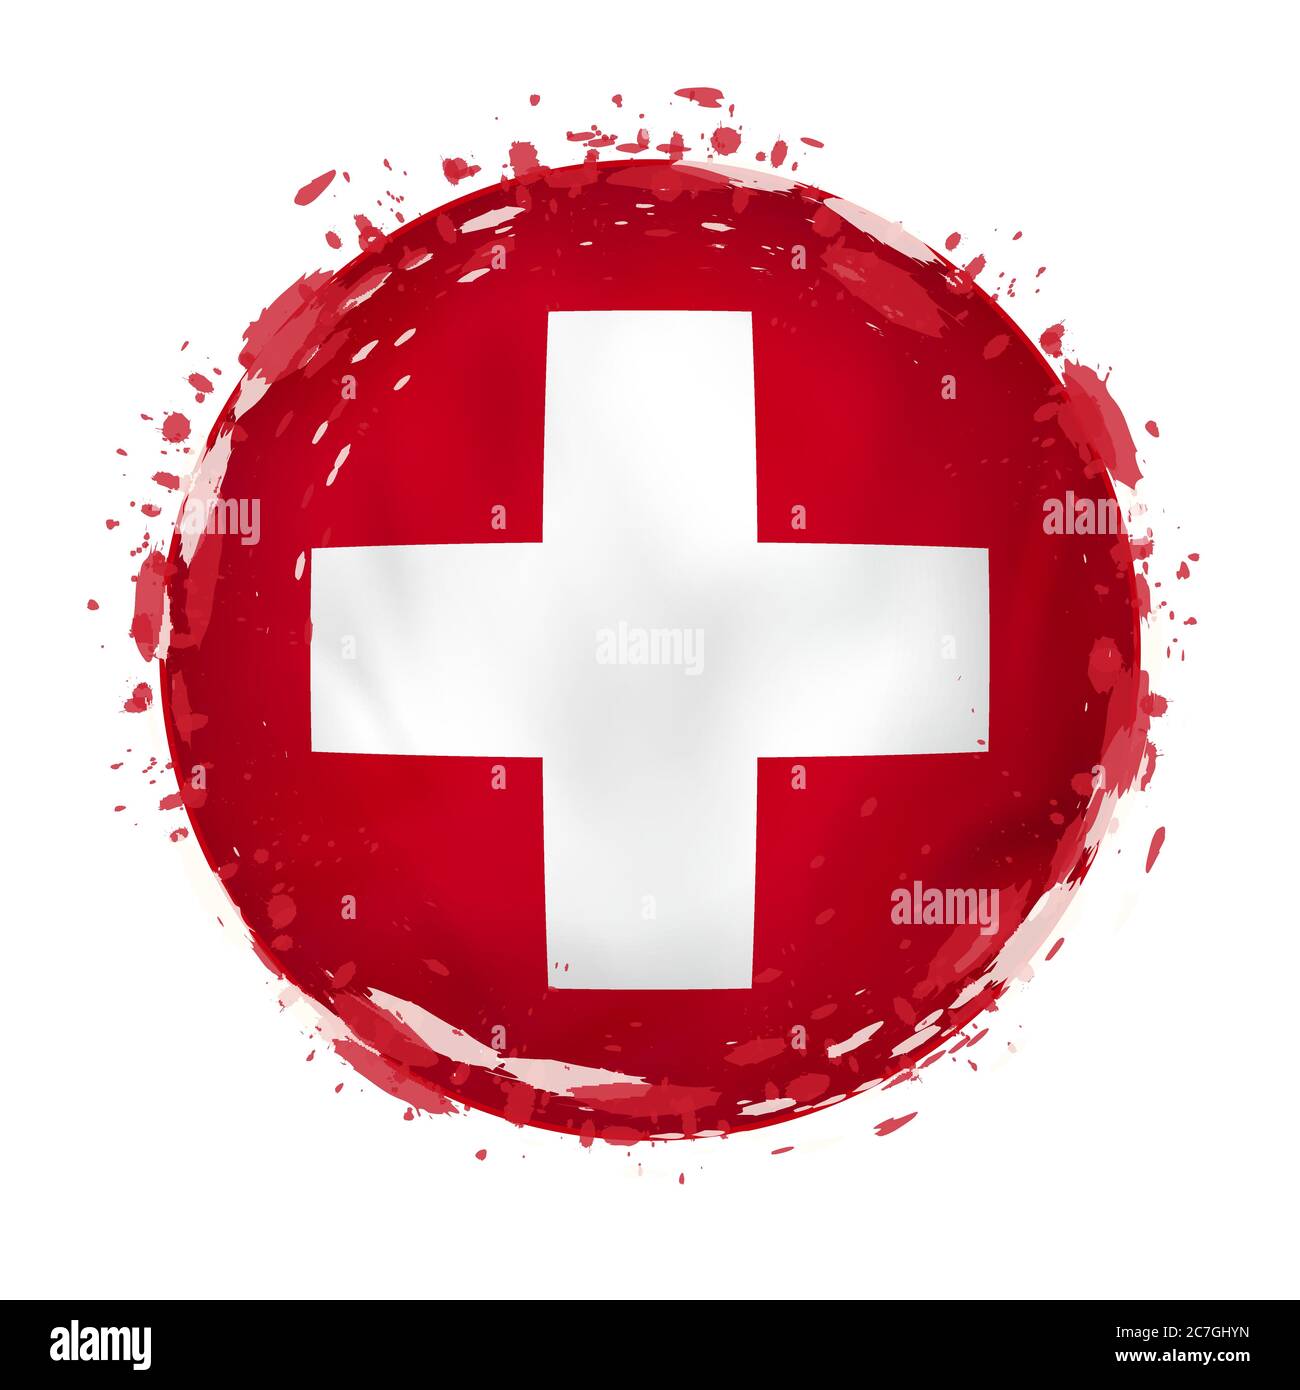 Switzerland Stamp Stock-Vektorgrafiken kaufen - Alamy